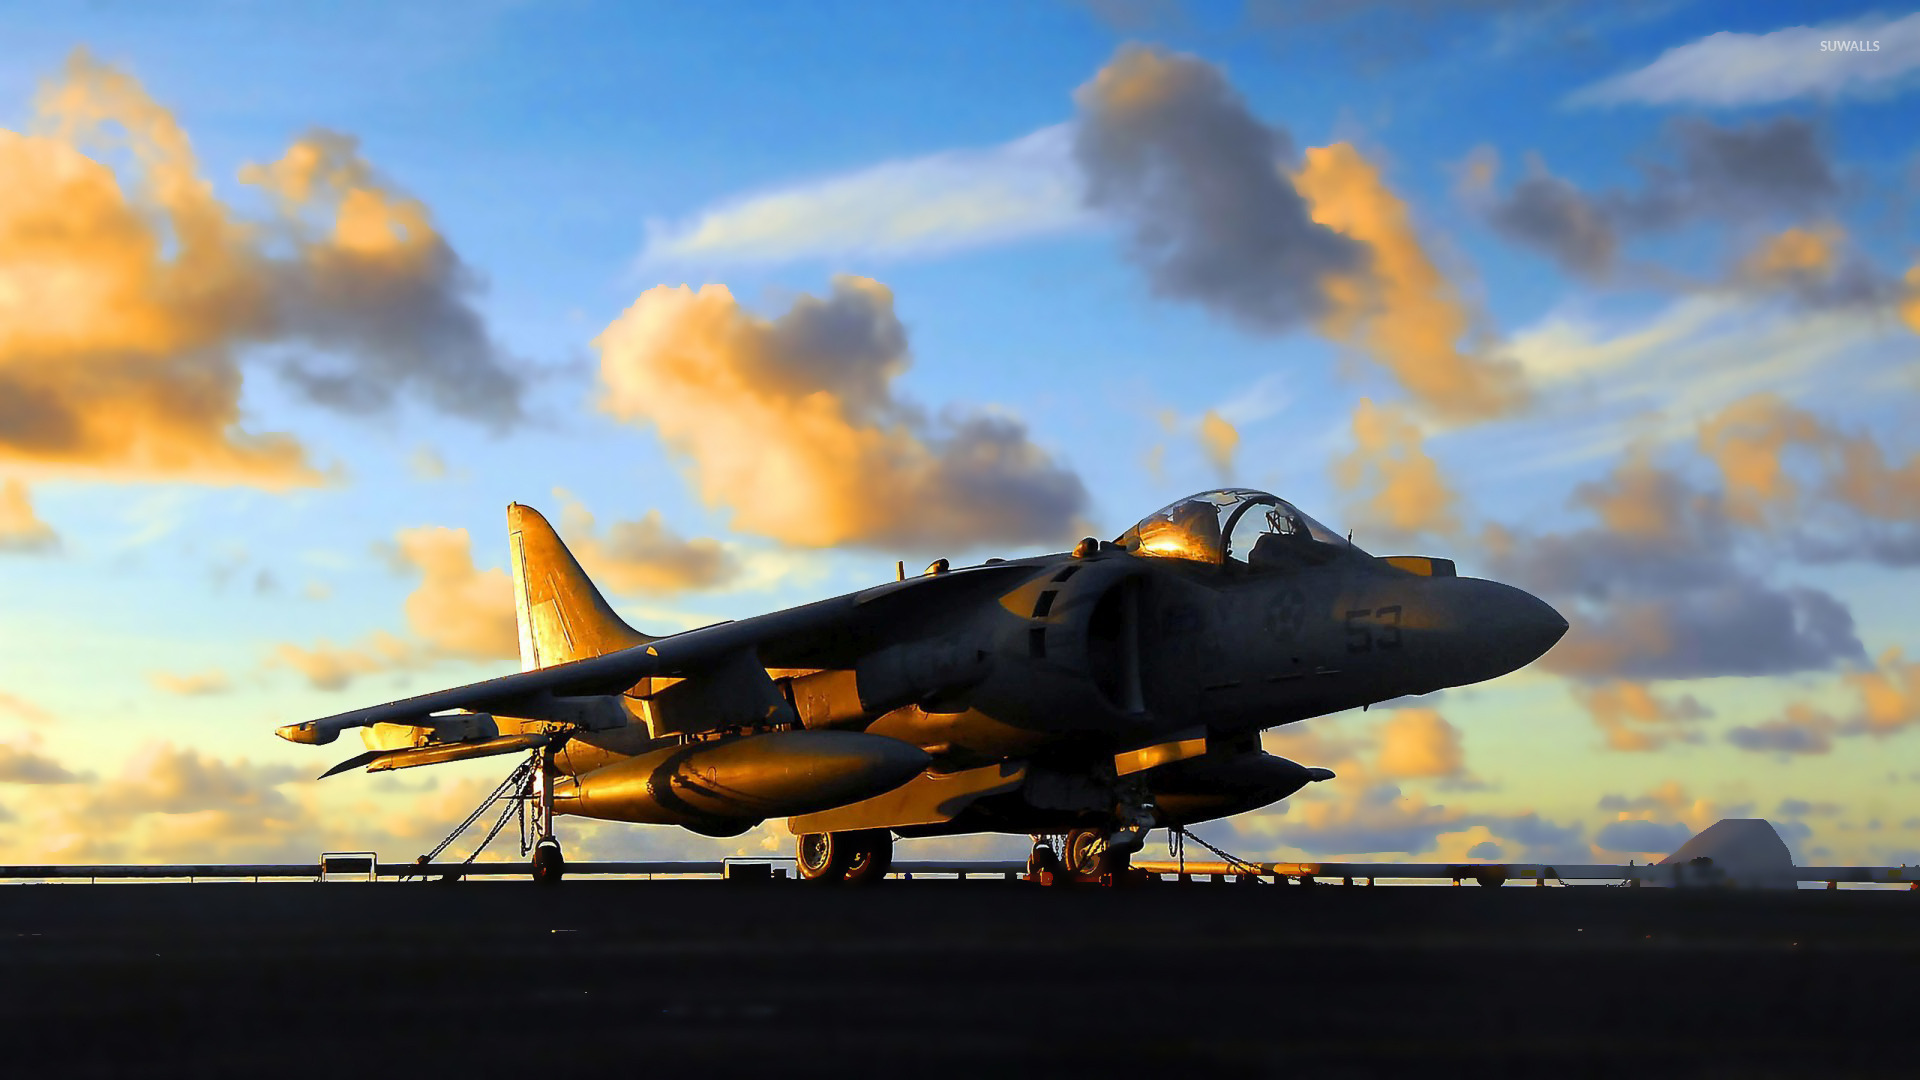 Light Reflecting On A Harrier Jump Jet Wallpaper Aircraft